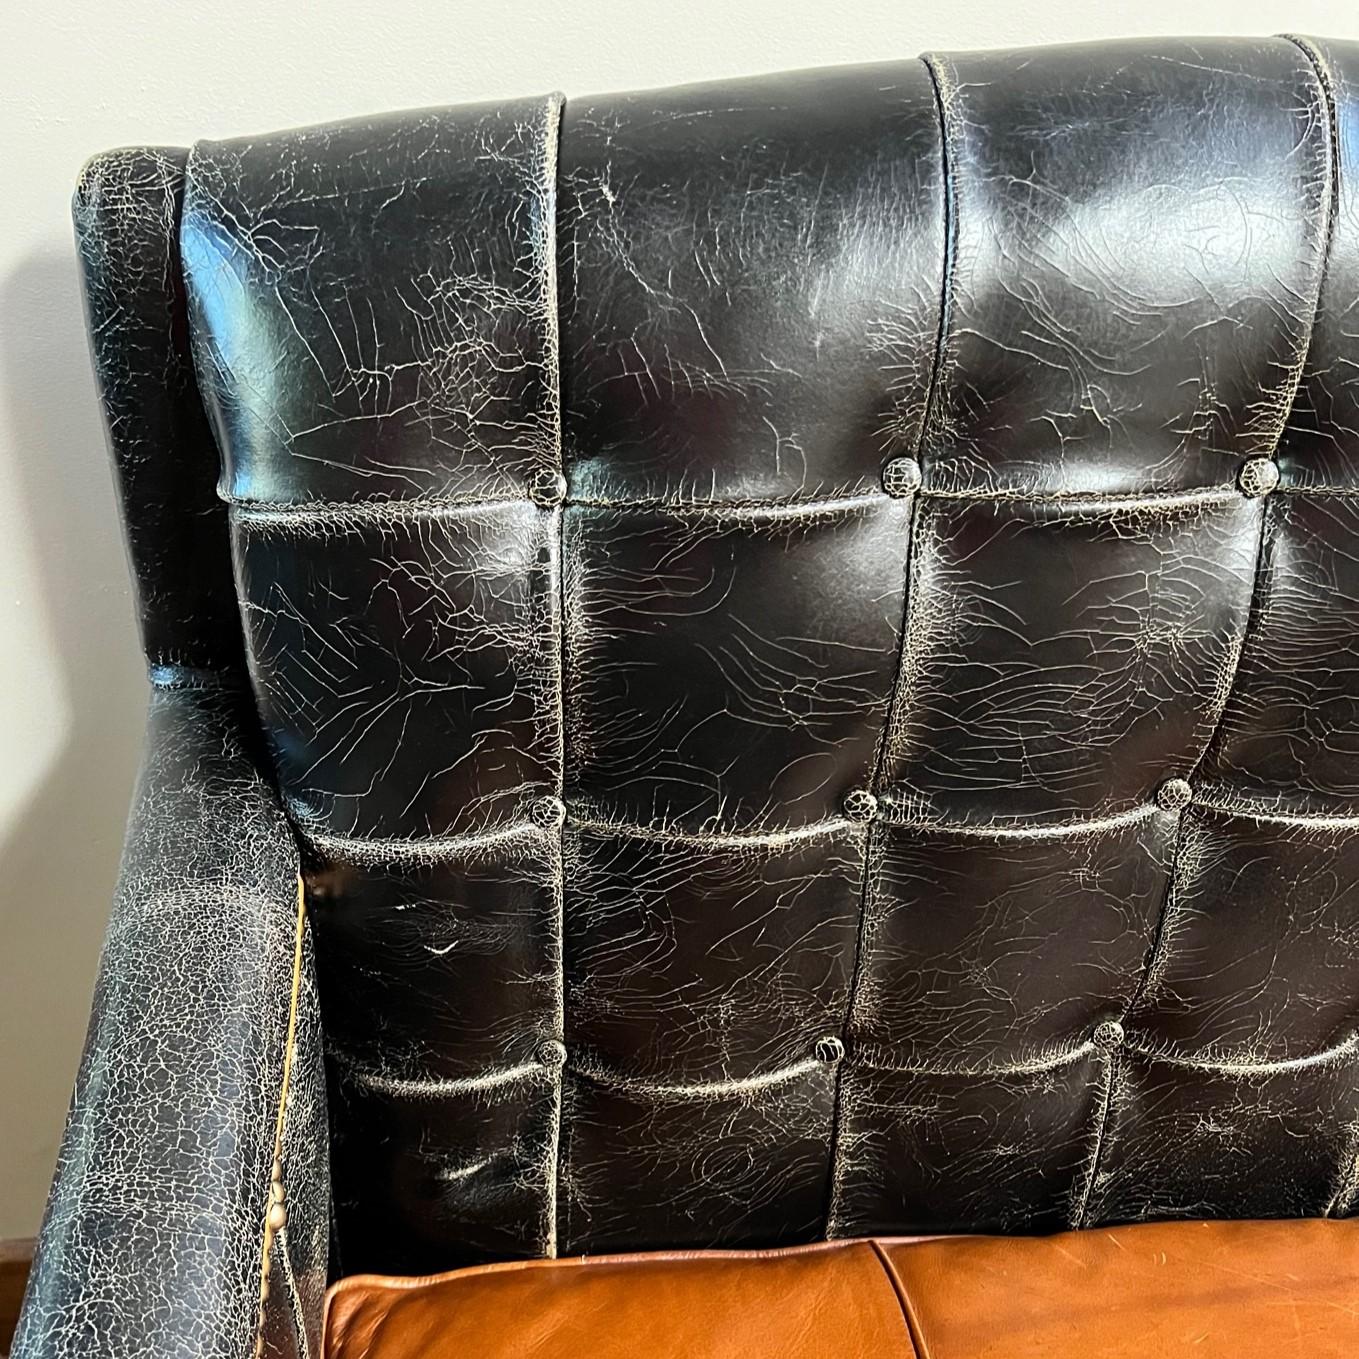 vintage distressed leather sofa